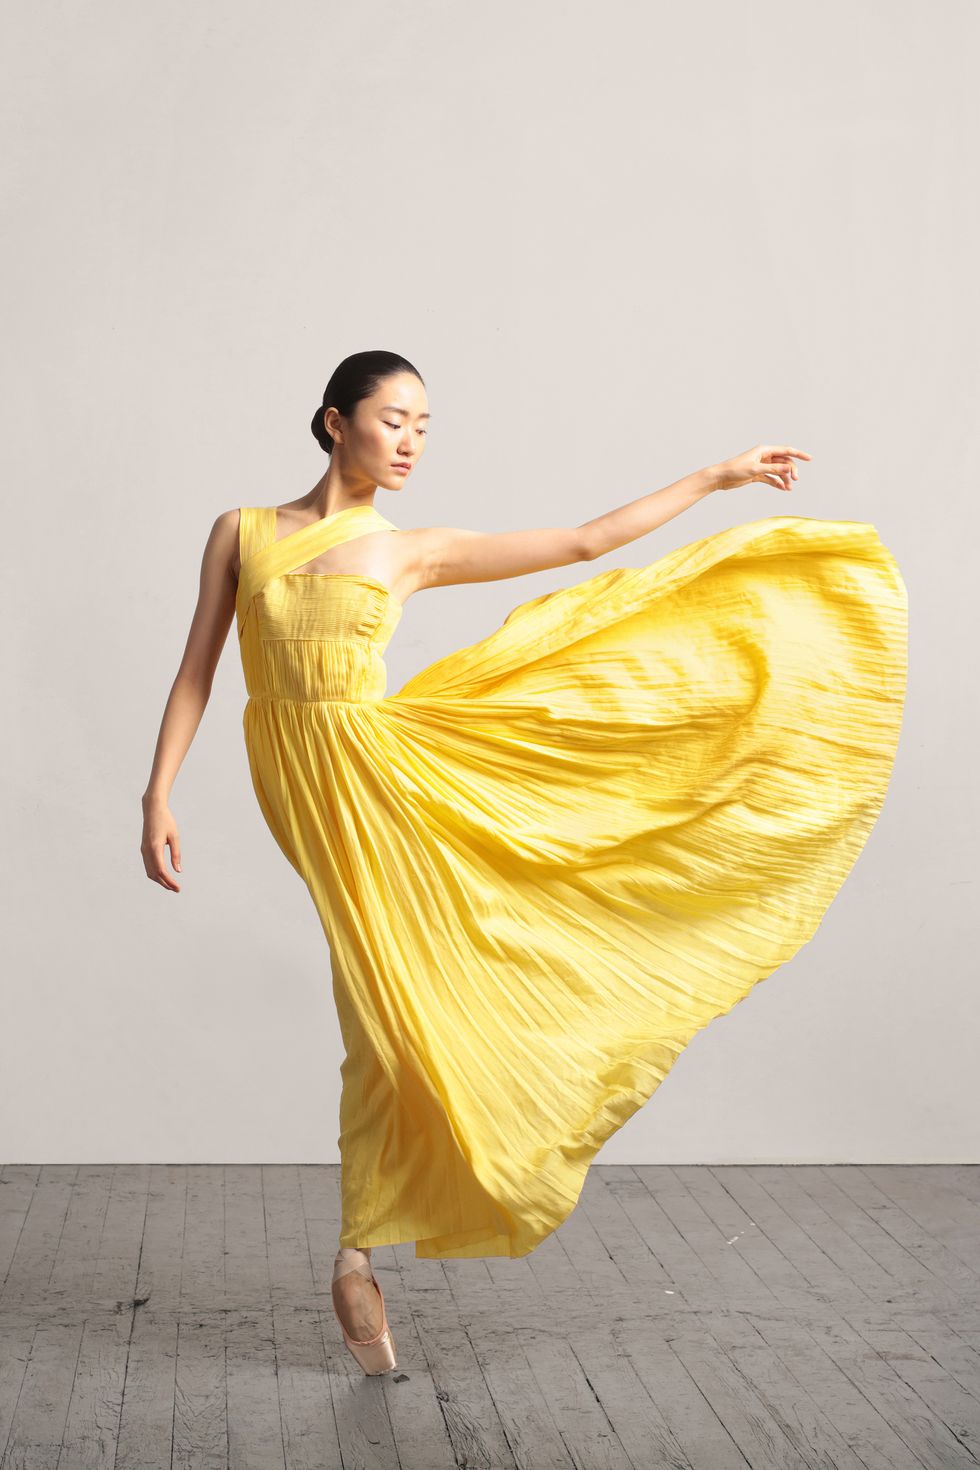 Gabriela Leotard – Dance Culture Designs